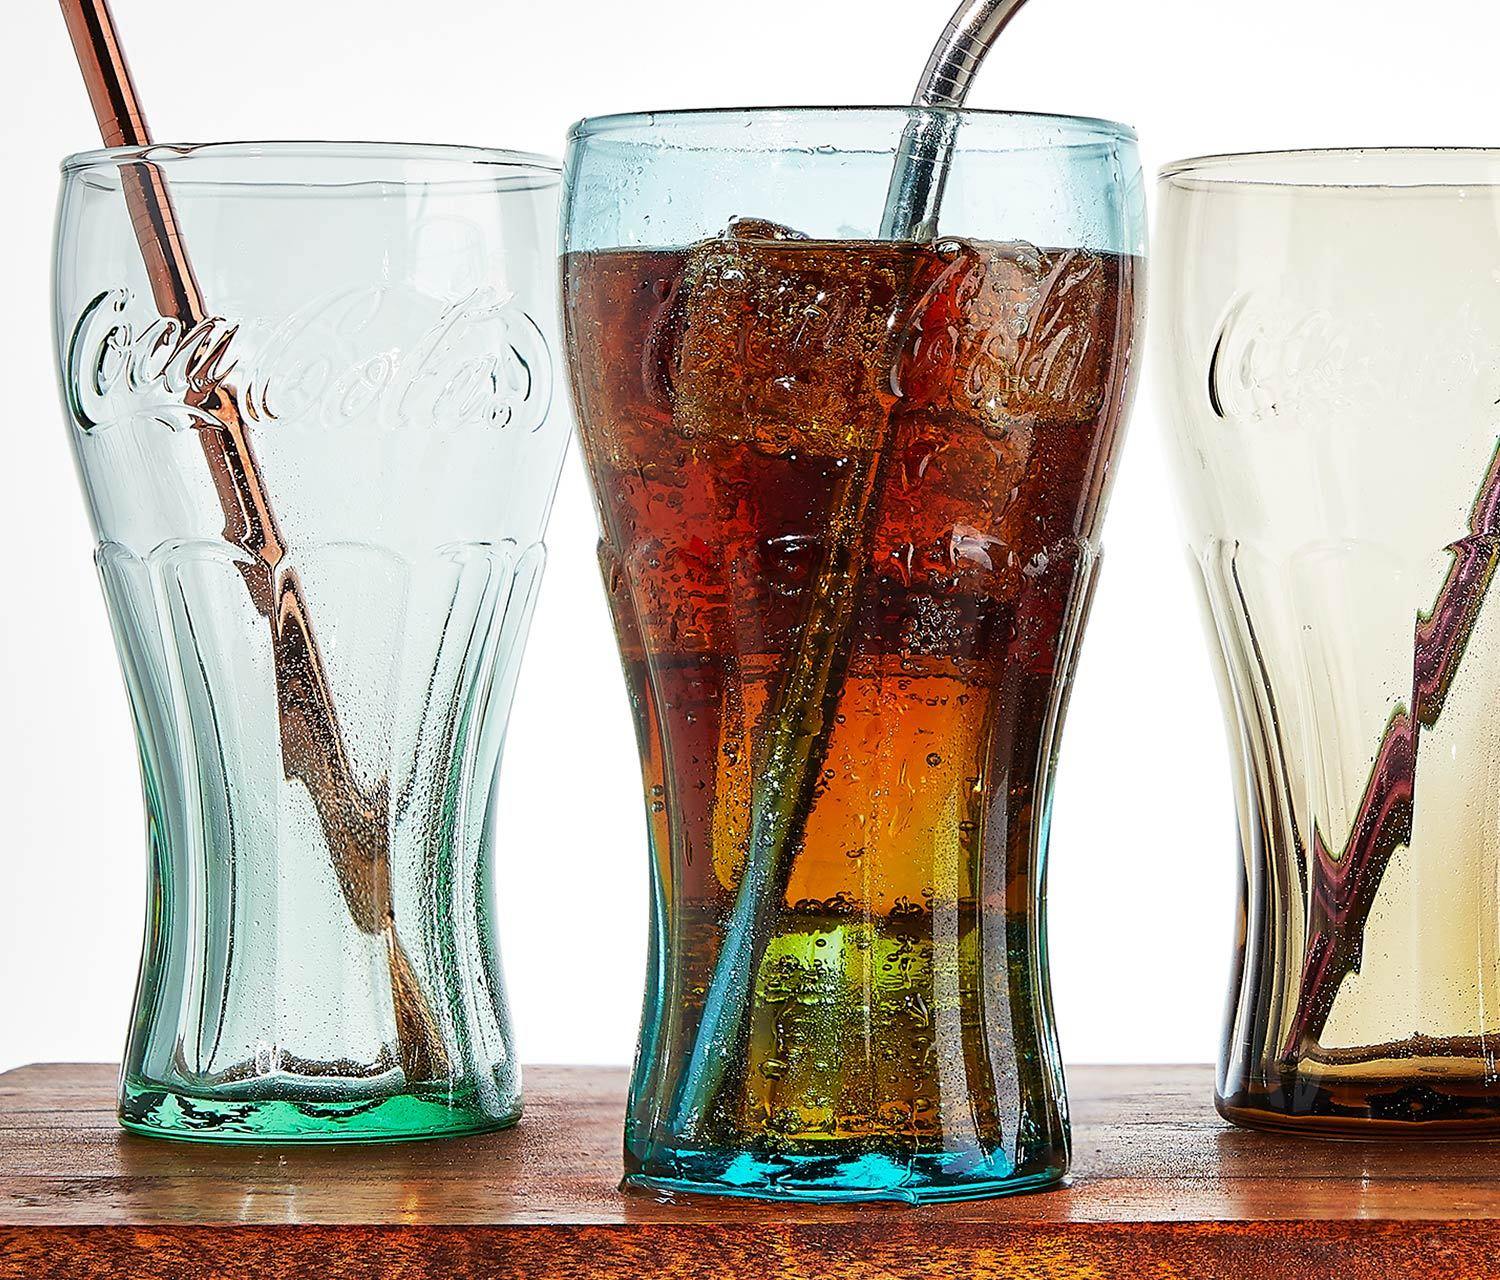 Libbey Coca-Cola Tumbler Glasses, Set of 6